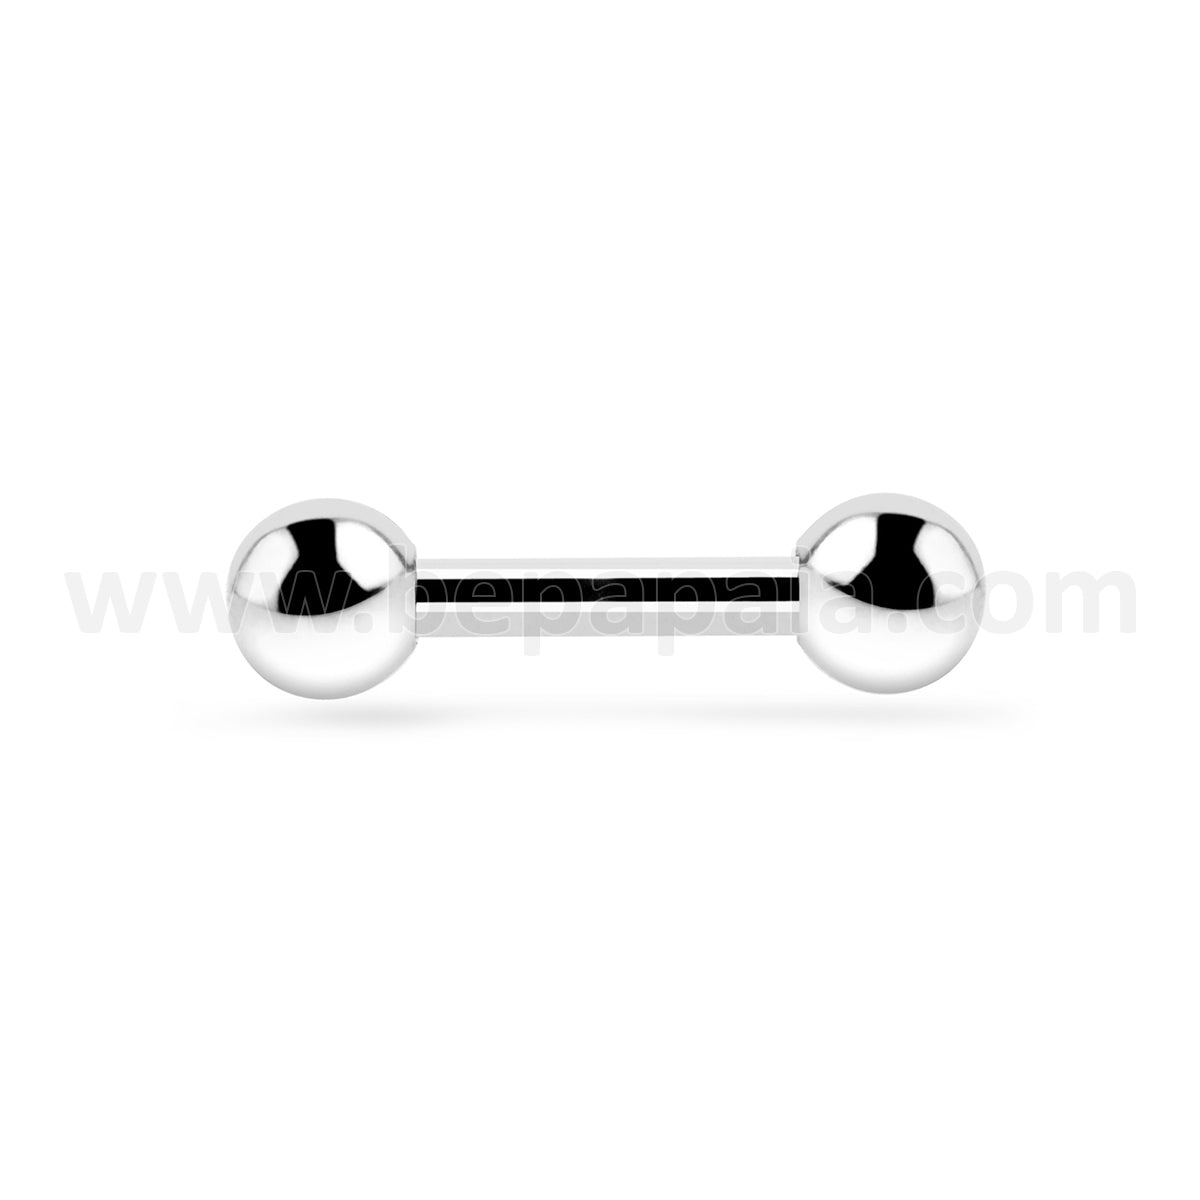 Piercing Barbel Acero 1.6x12,14,16,18mm